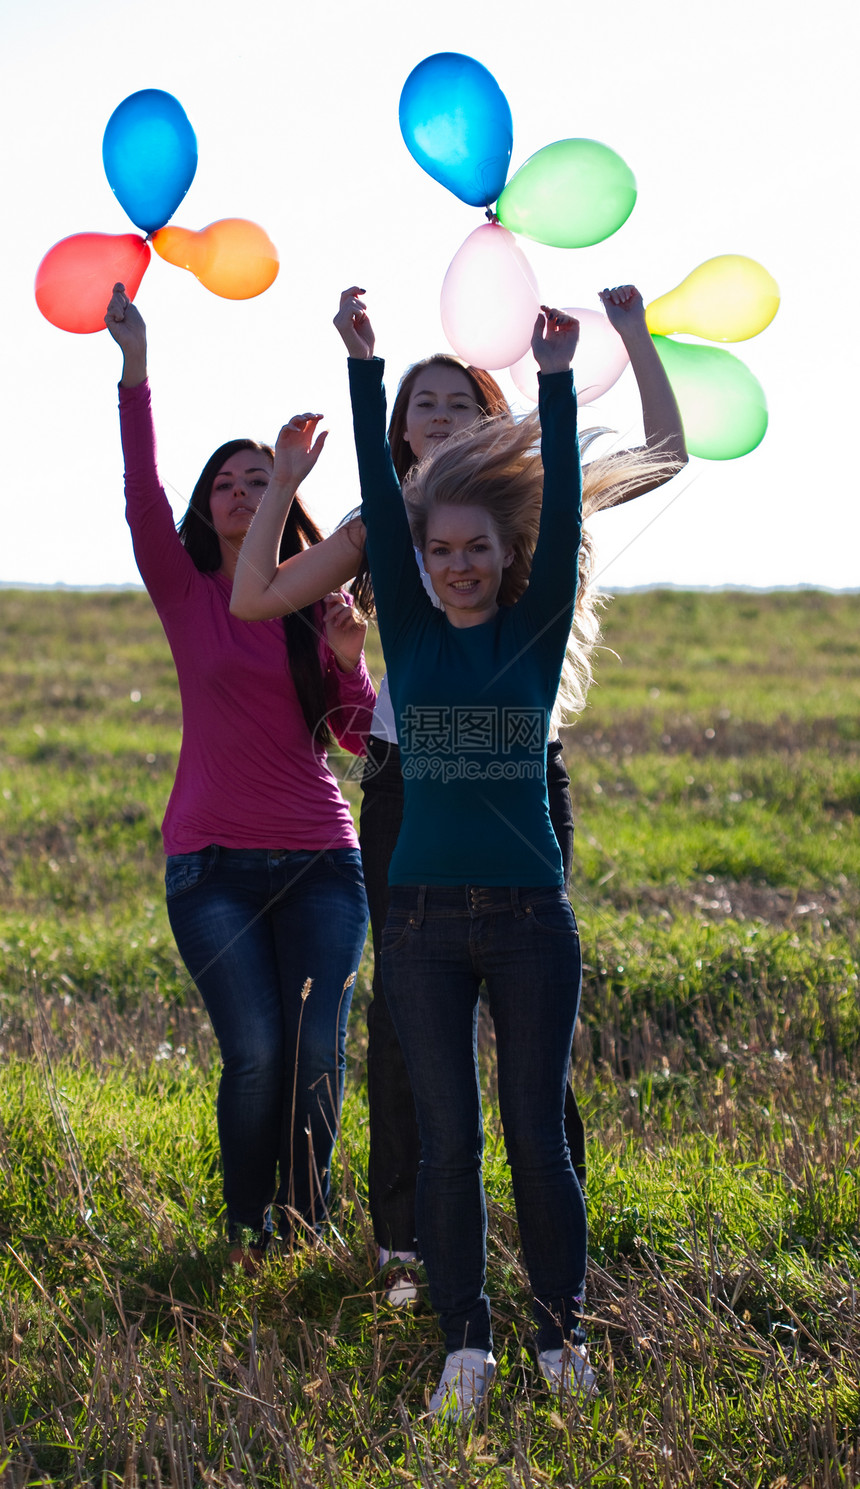 三名美丽的年轻女子 带着气球进入田野对抗喜悦快乐场景闲暇蓝色自由草地女孩们幸福微笑图片